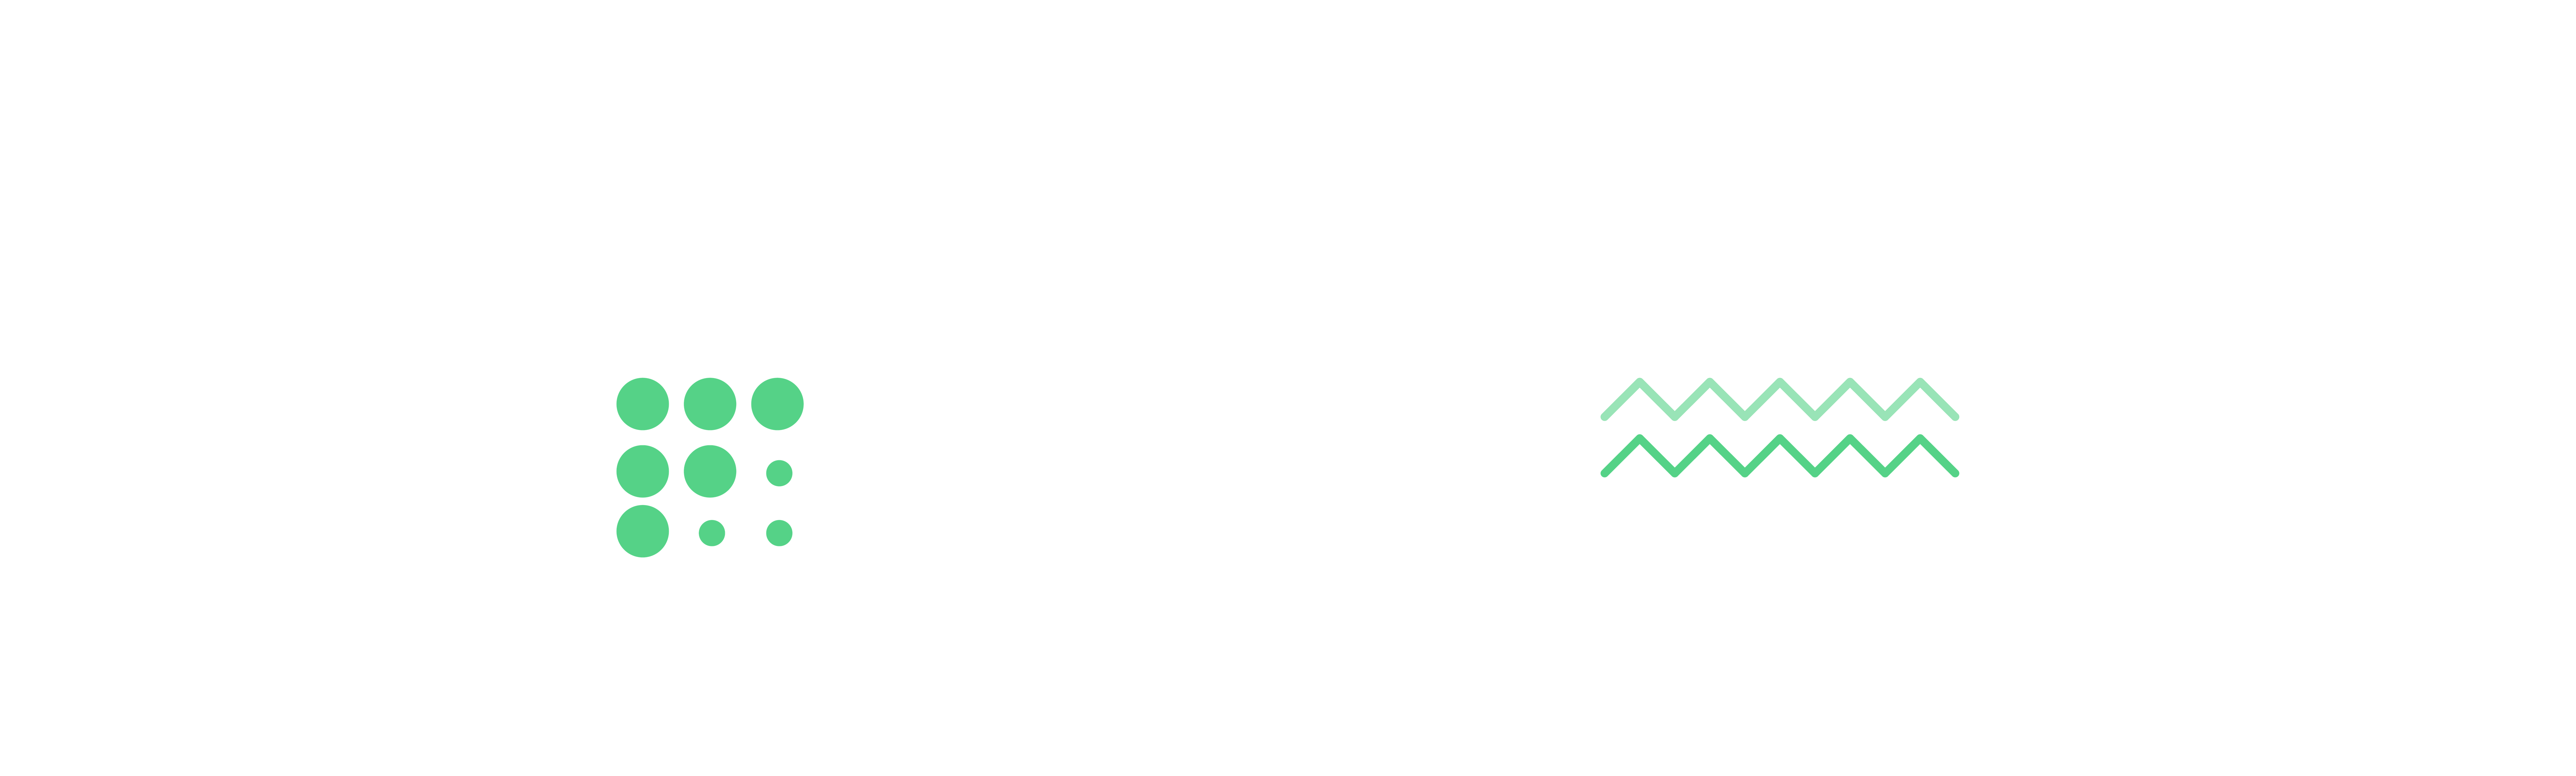 FONOA-MICROSITE-BANNER-24